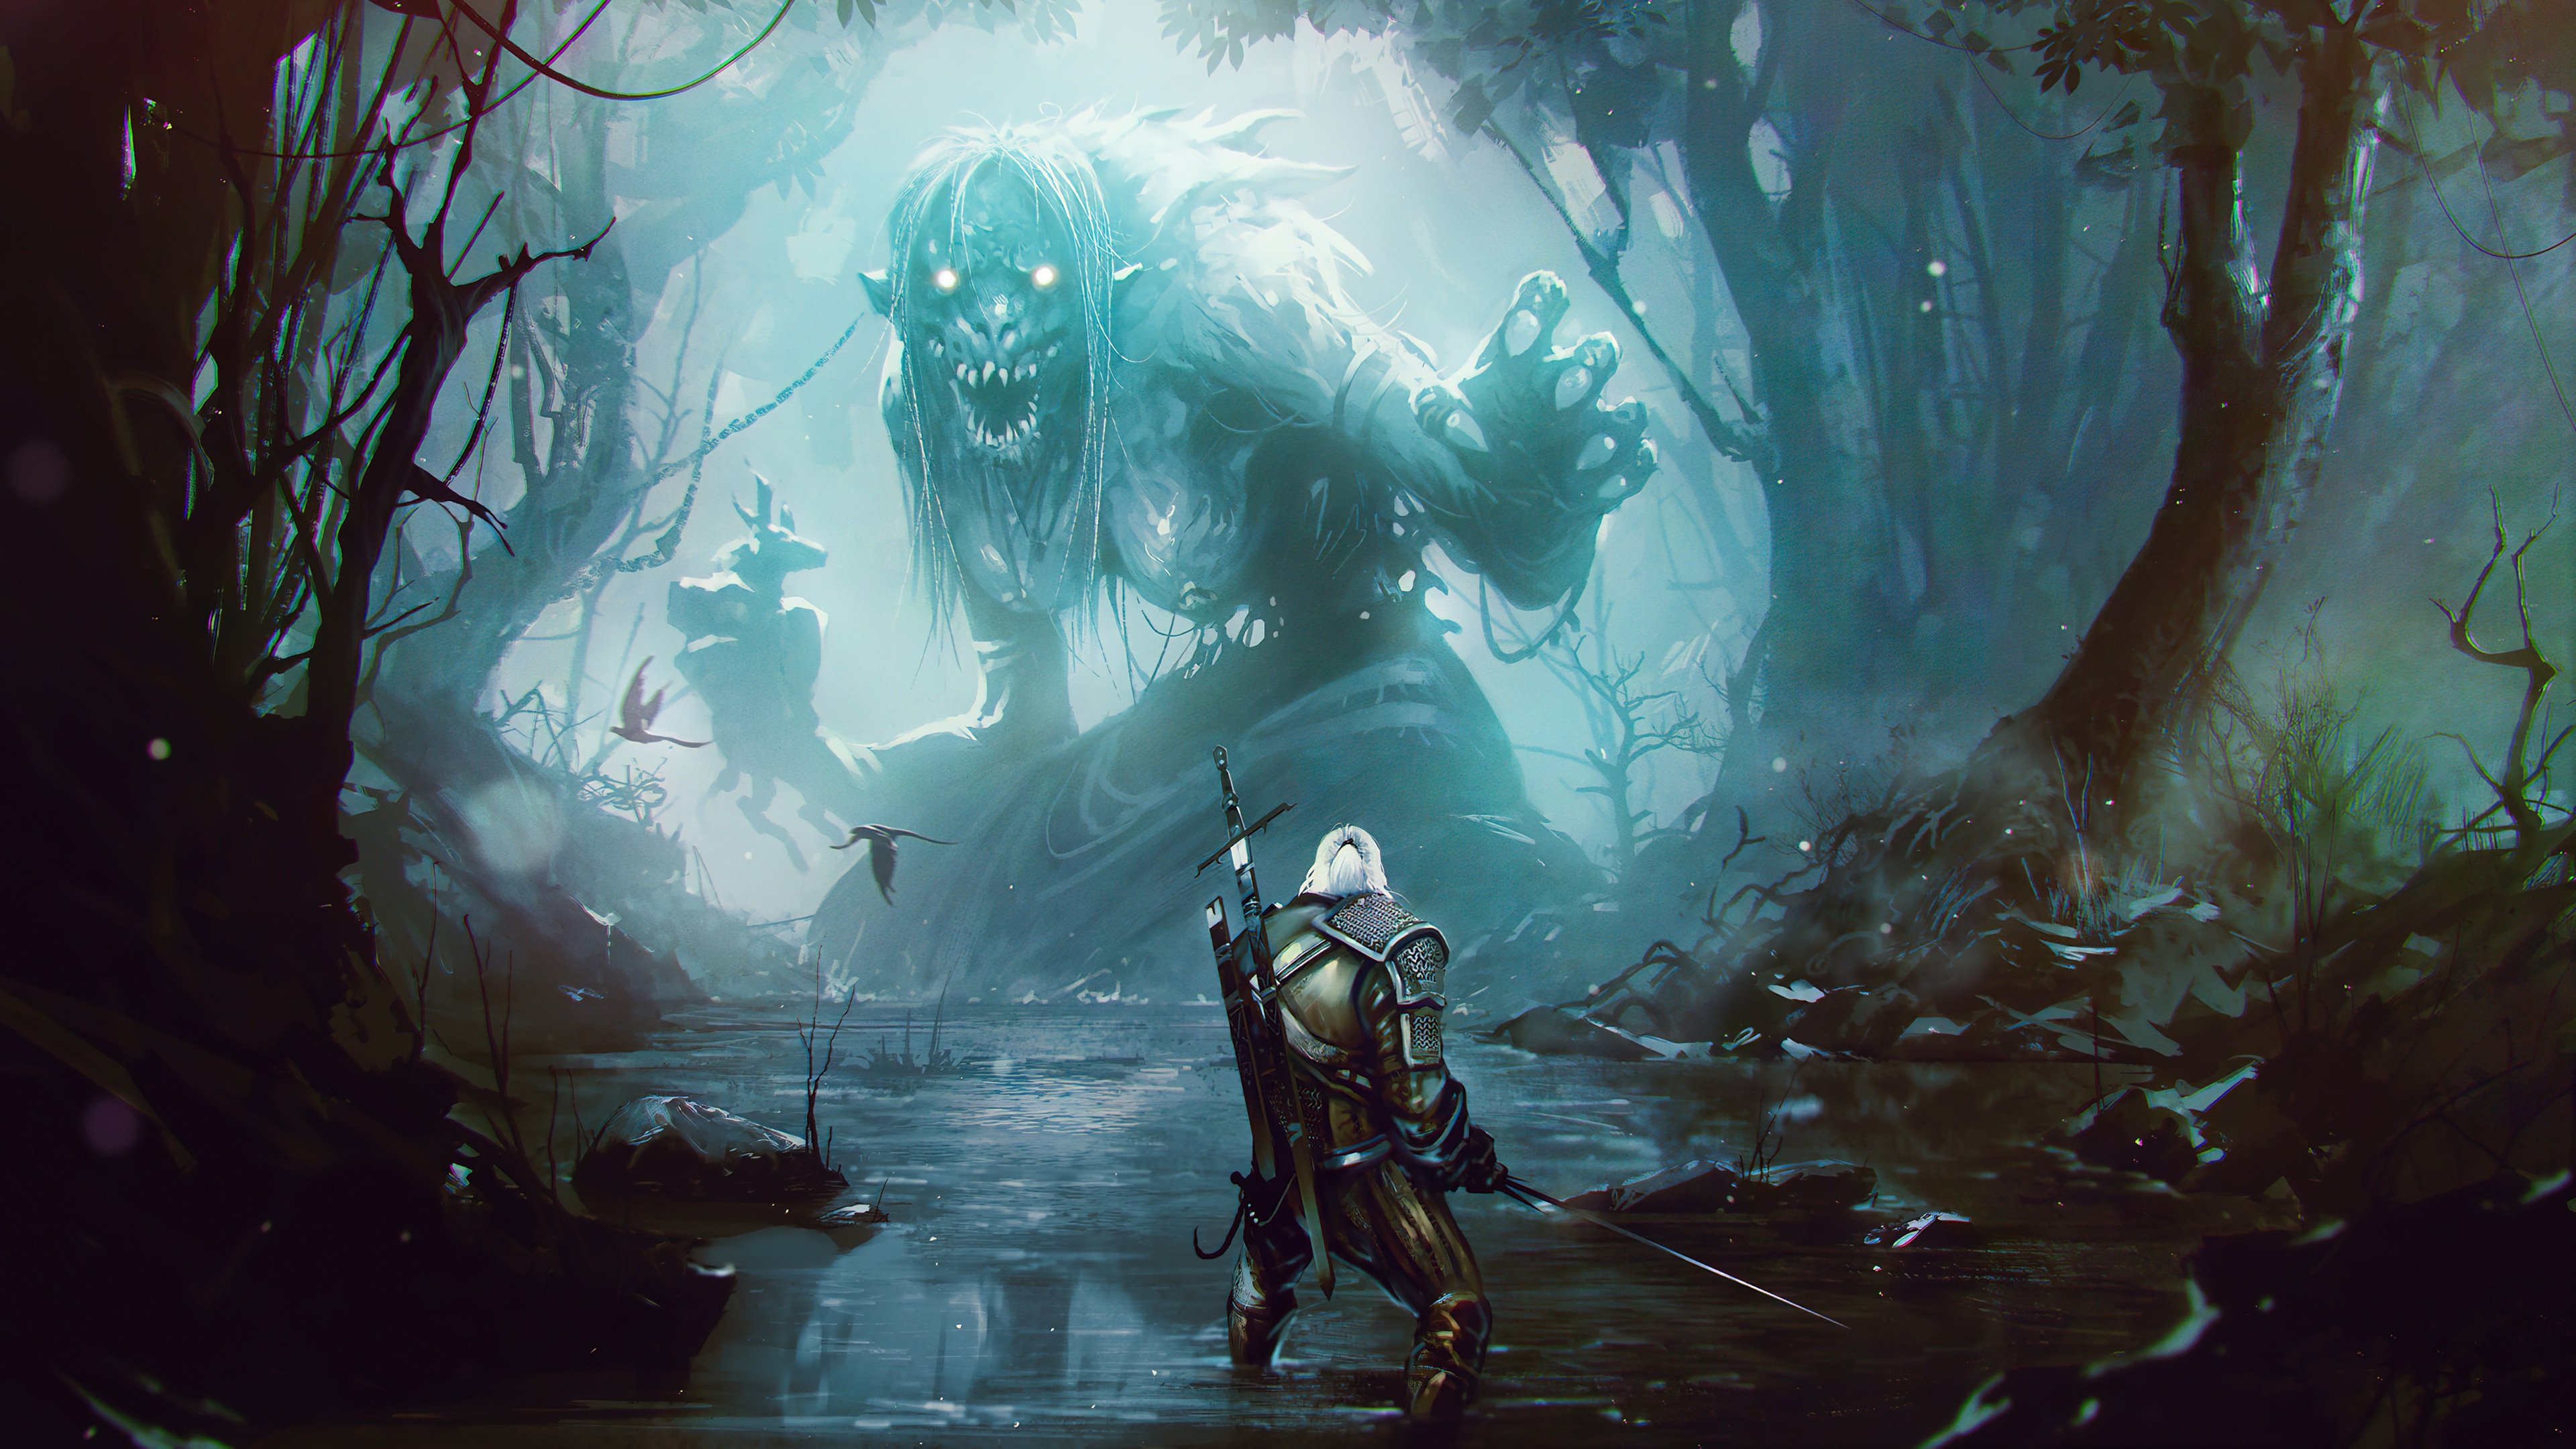 Fondos de pantalla The Witcher Geralt of Rivia con monstruo